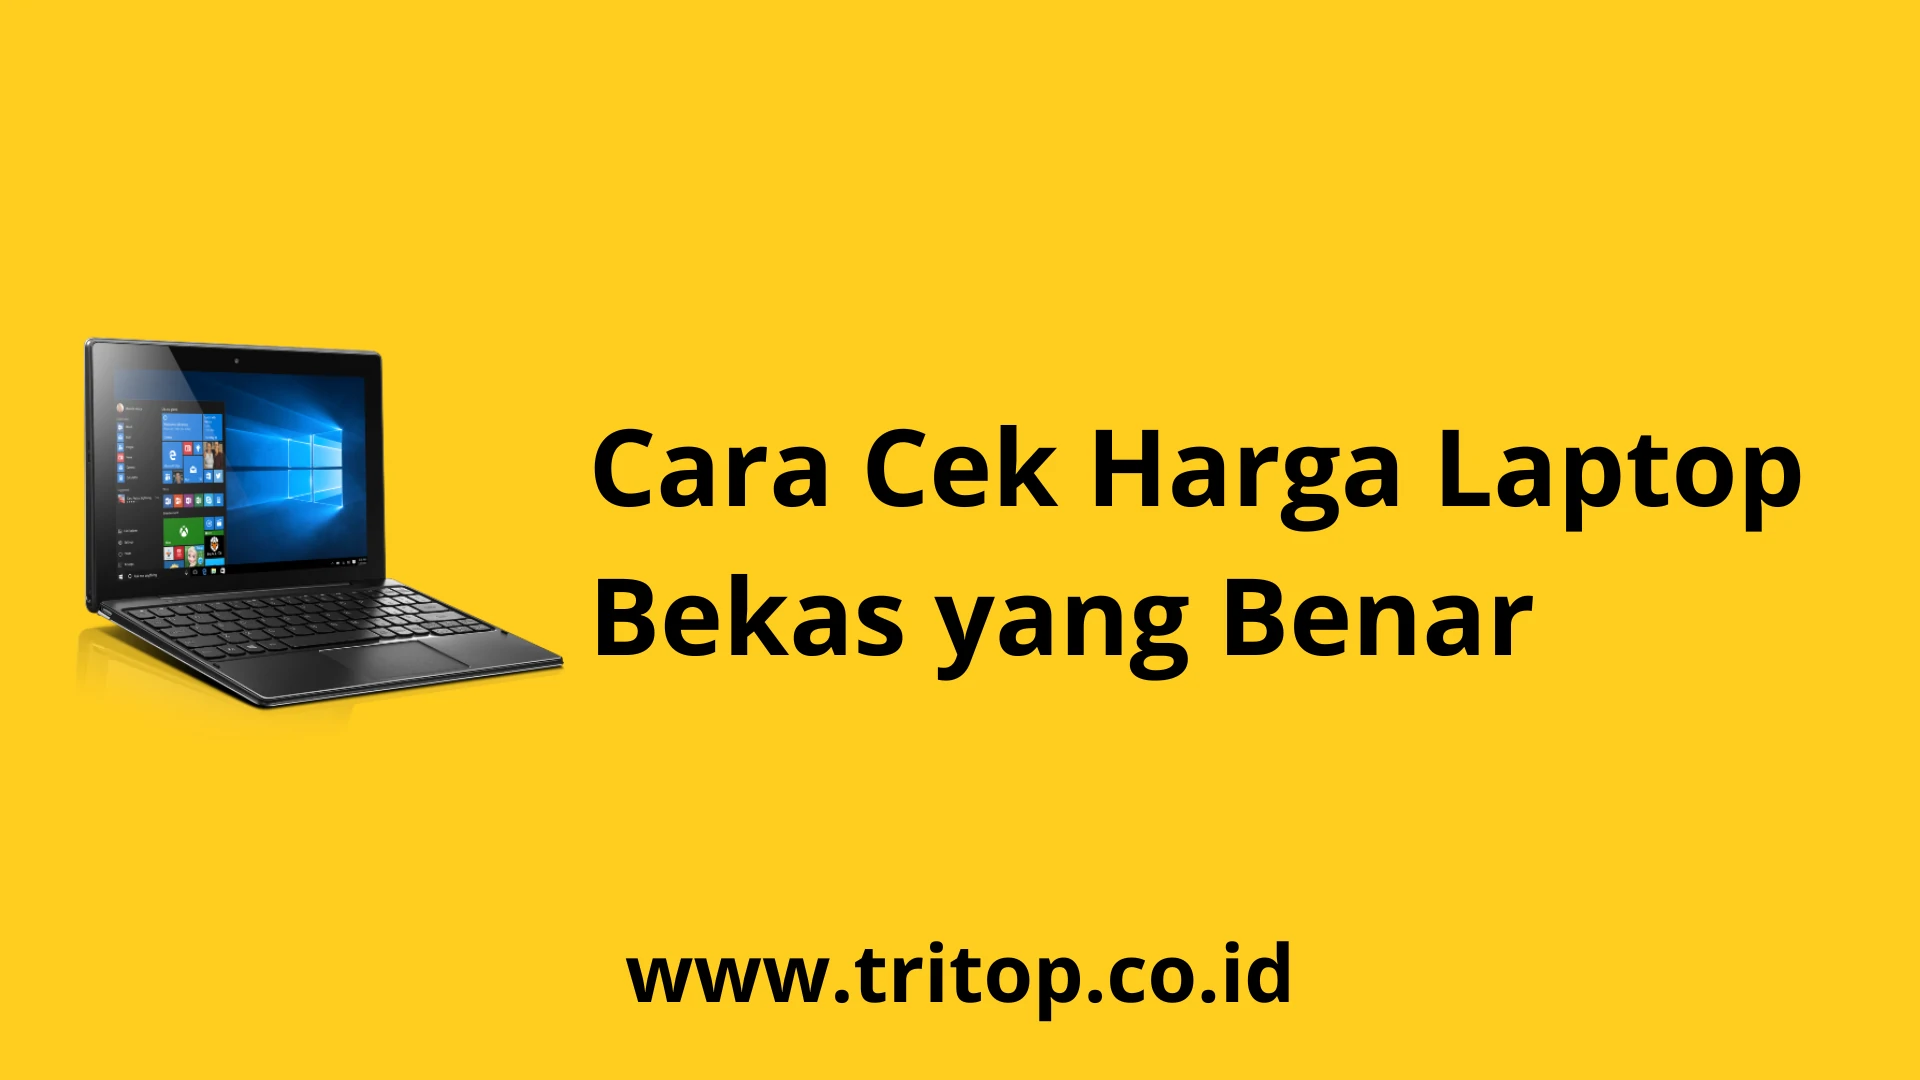 Cek Harga Laptop Bekas www.tritop.co.id